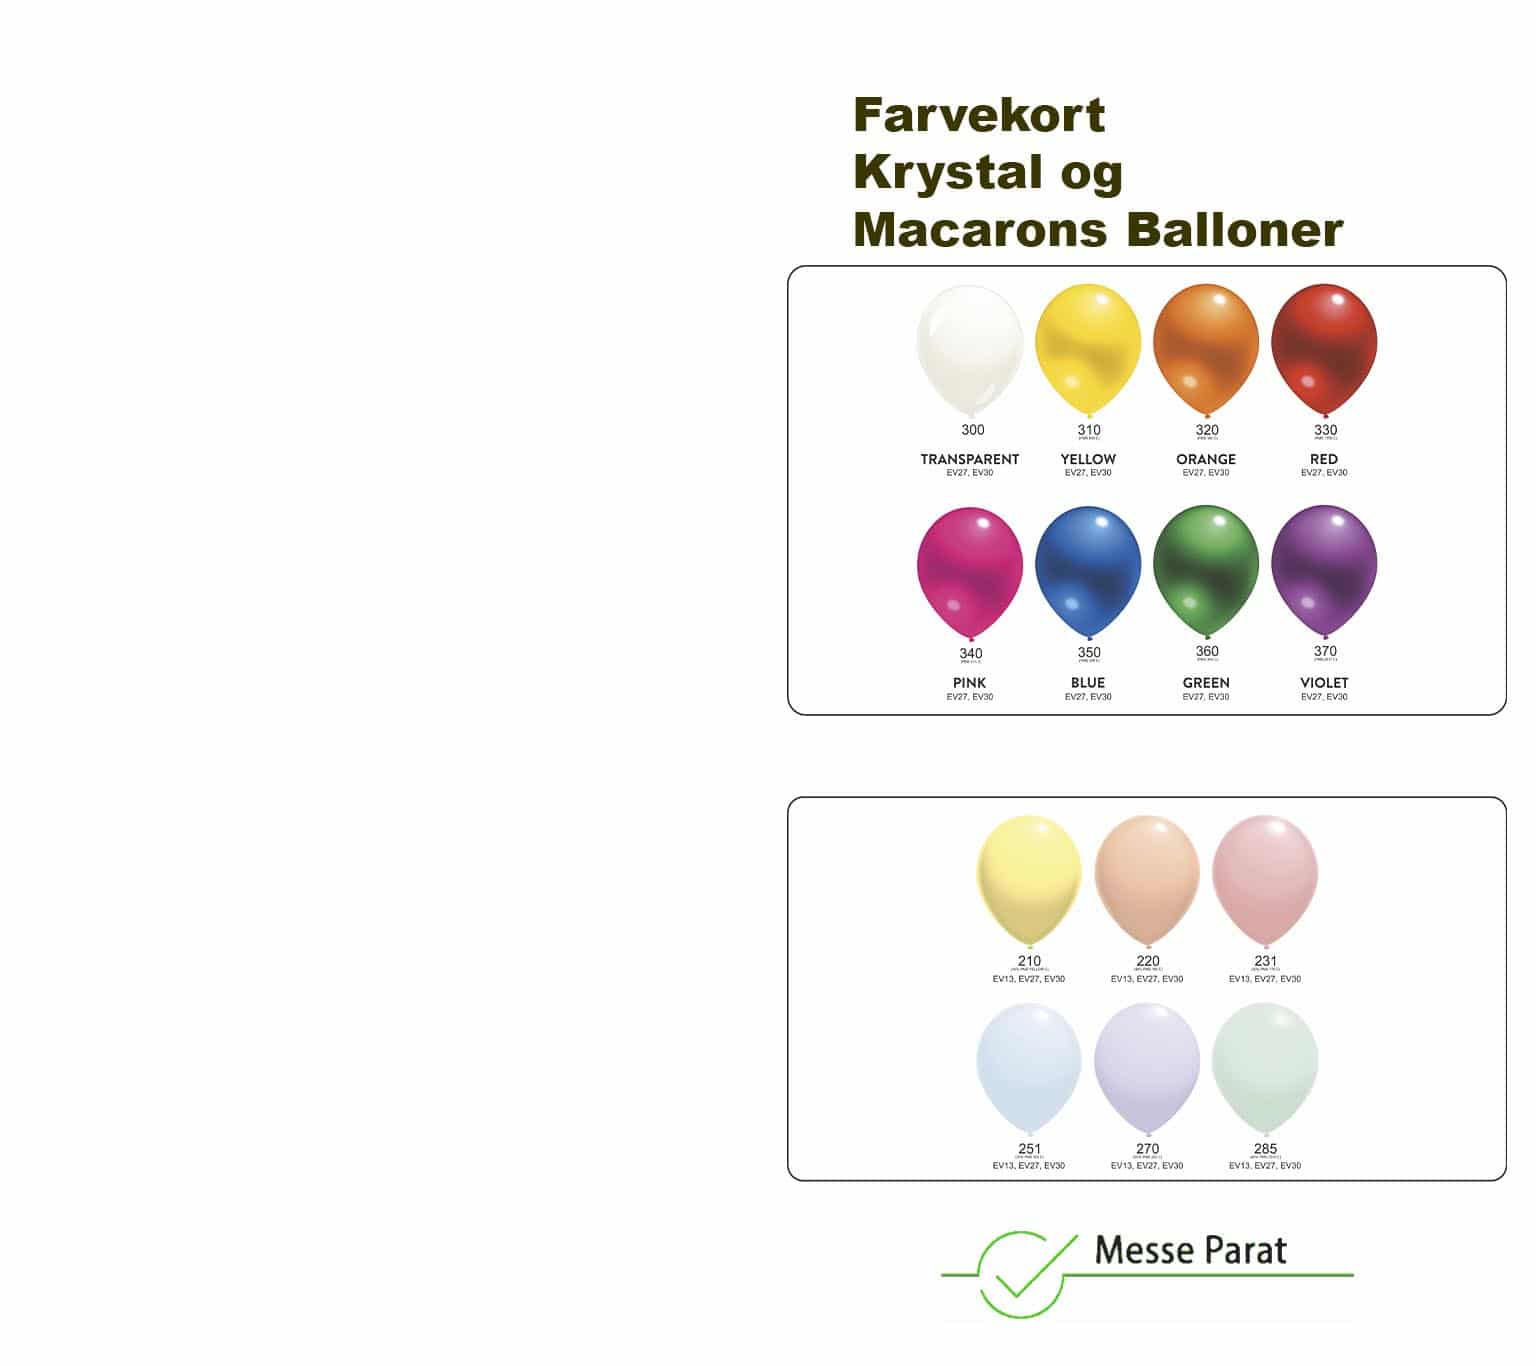 farvekort krystal og macarons balloner